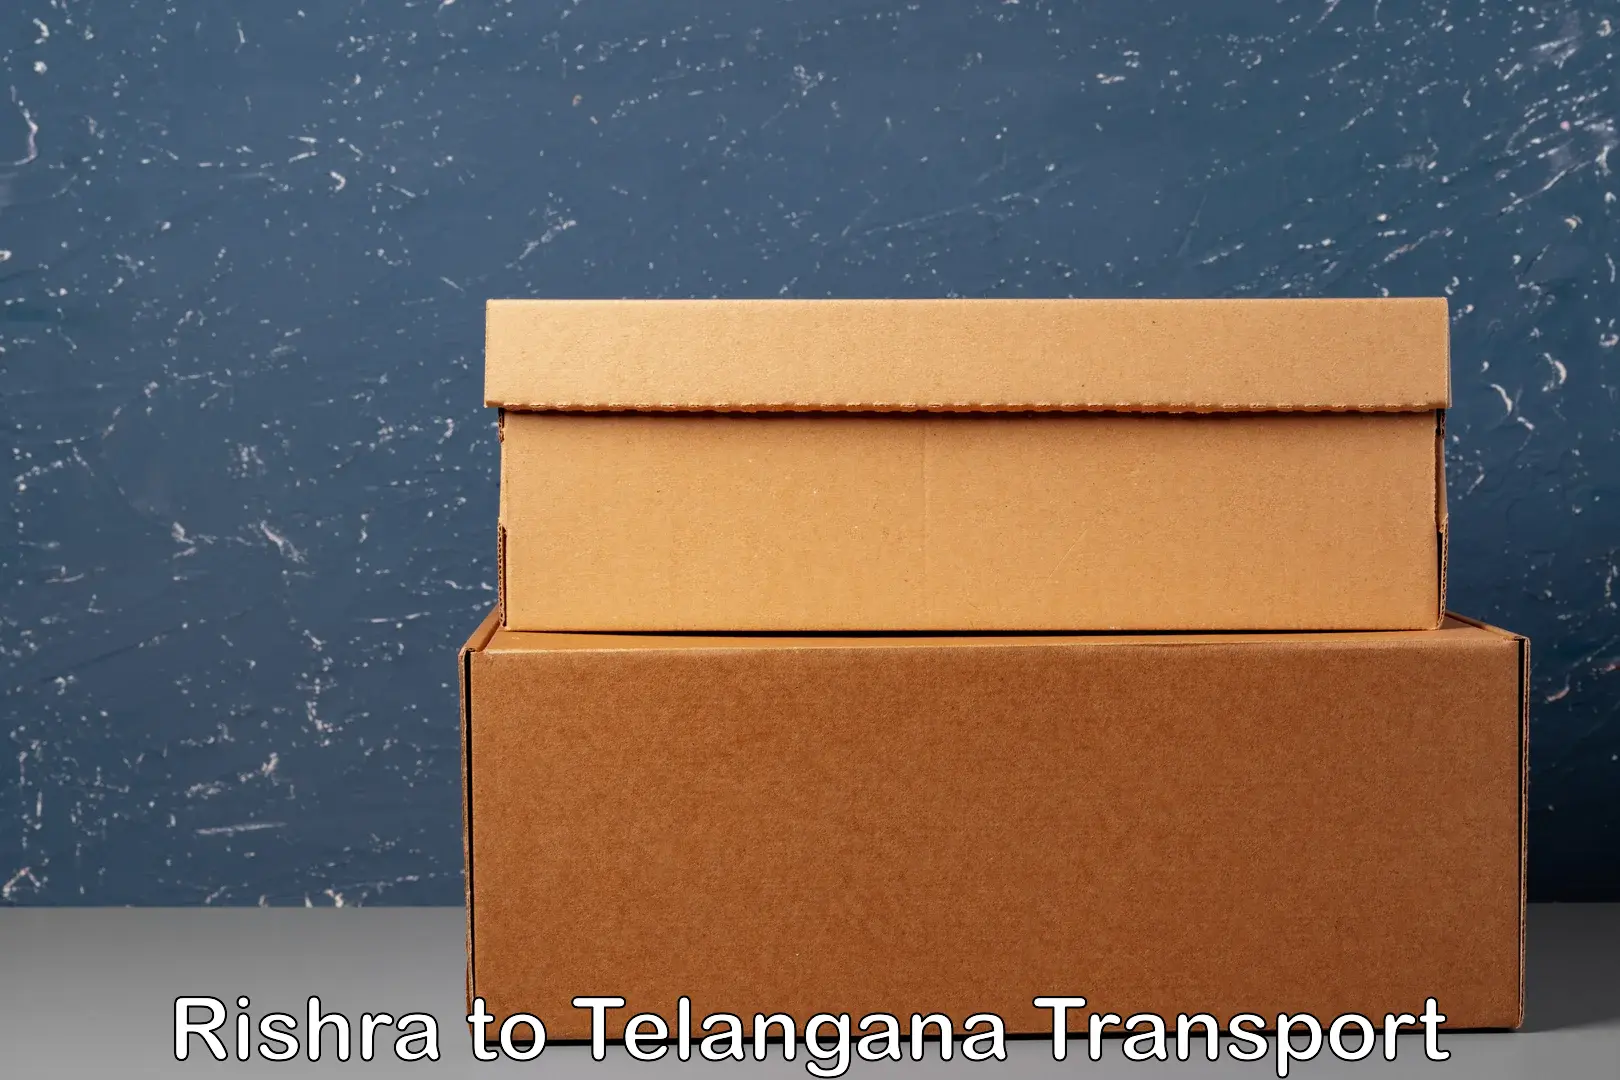 Shipping partner Rishra to Gangadhara